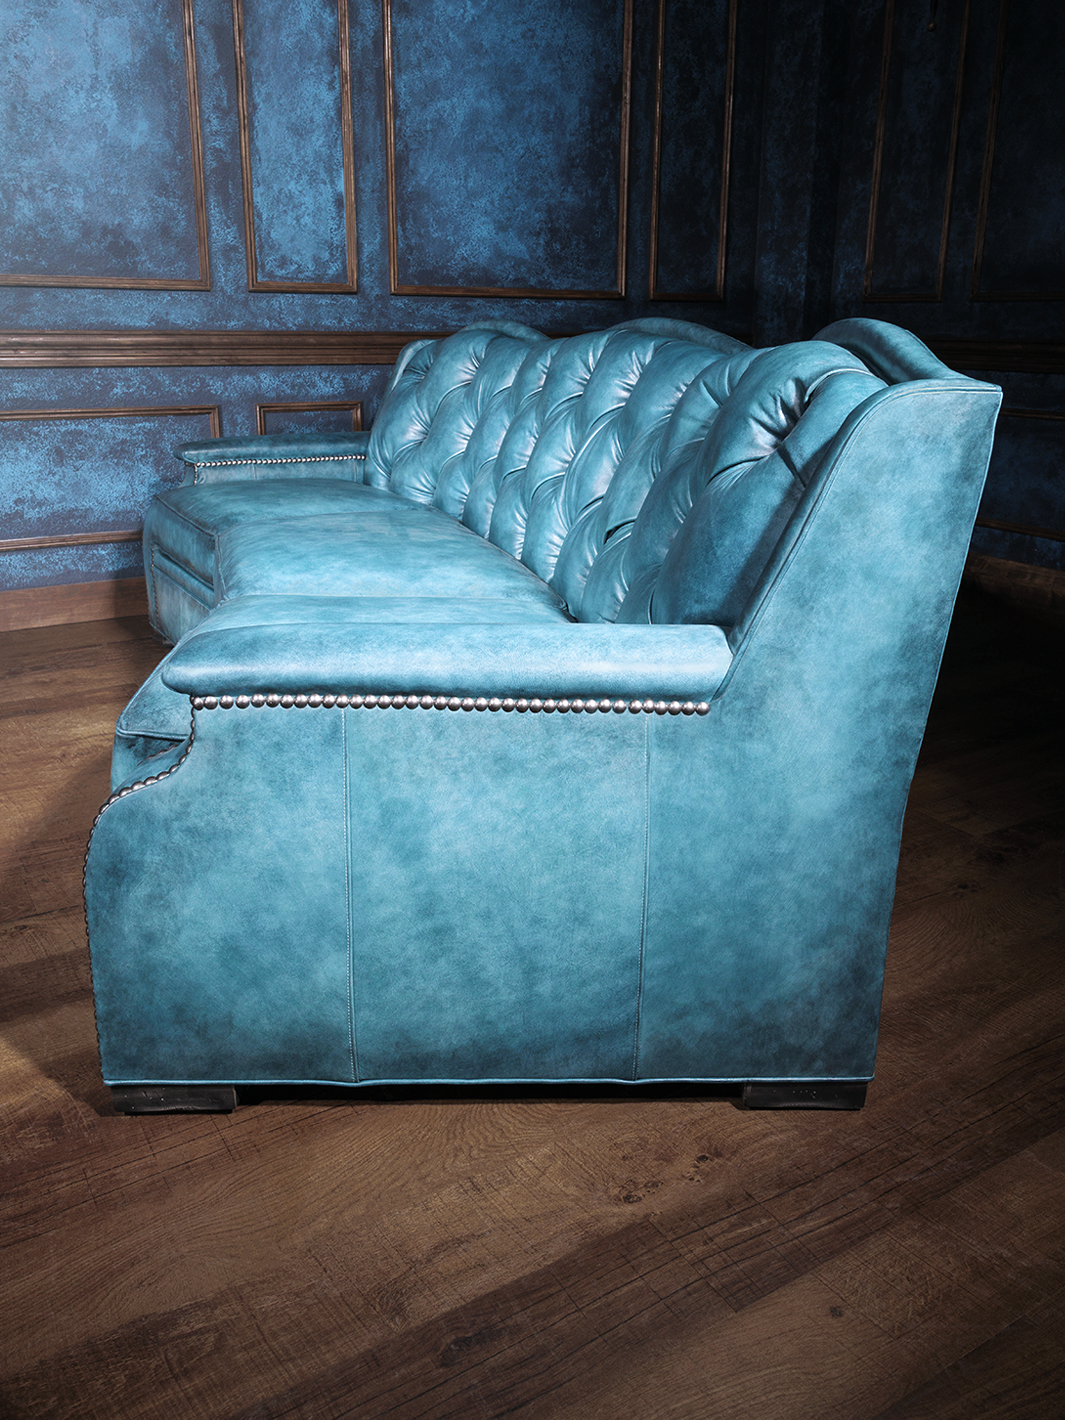 Sky Blue Tufted Leather Sofa